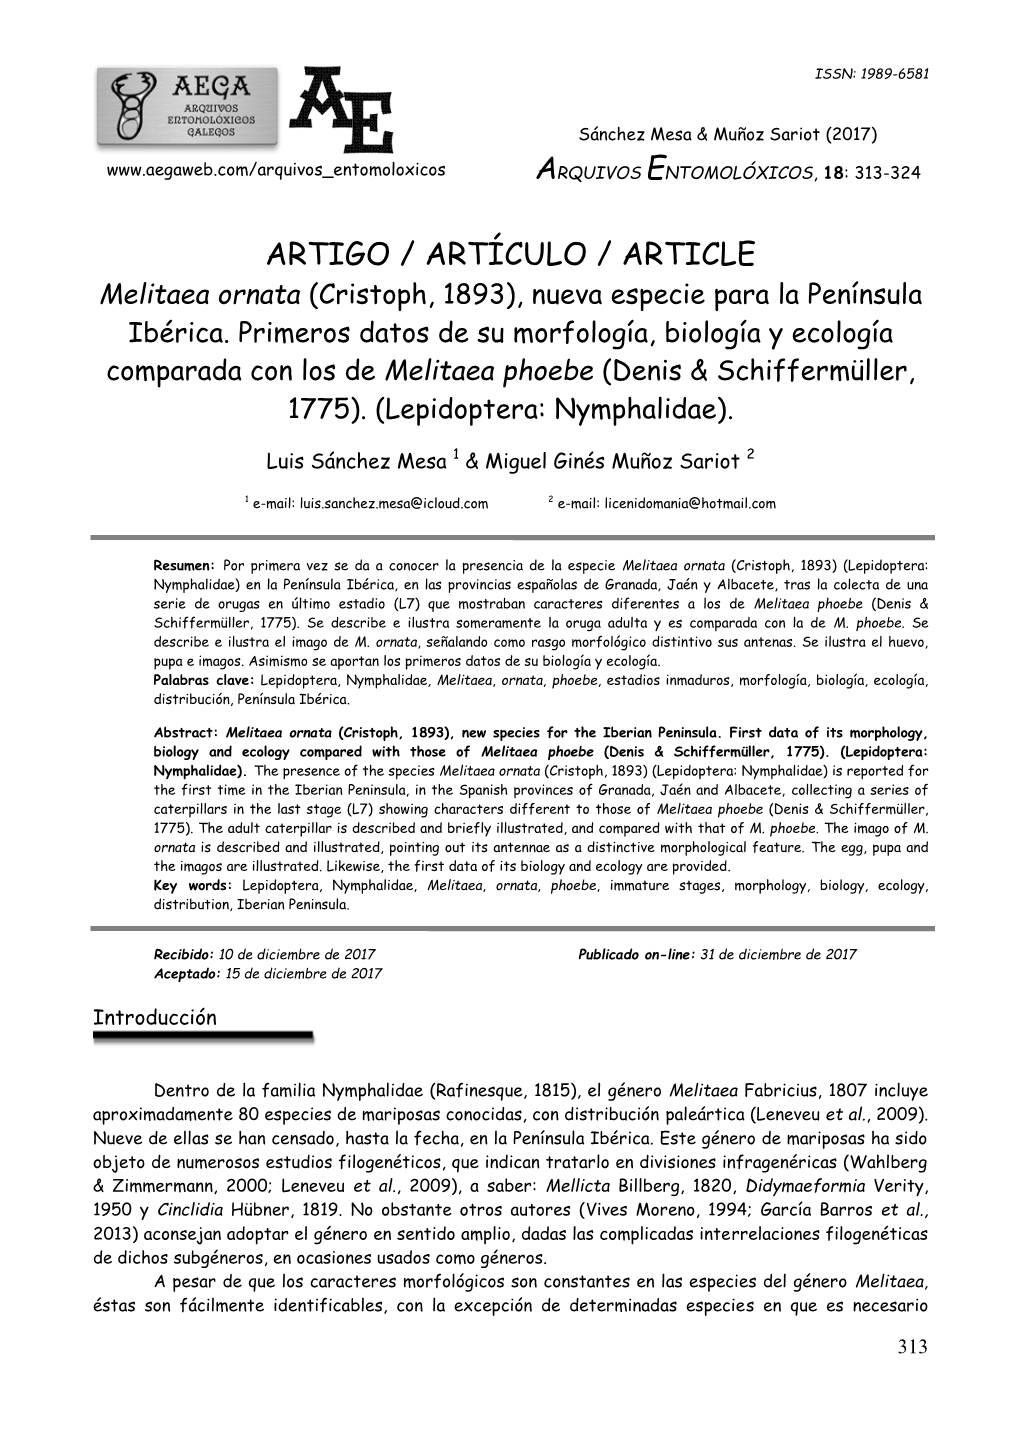 ARTIGO / ARTÍCULO / ARTICLE Melitaea Ornata (Cristoph, 1893), Nueva Especie Para La Península Ibérica